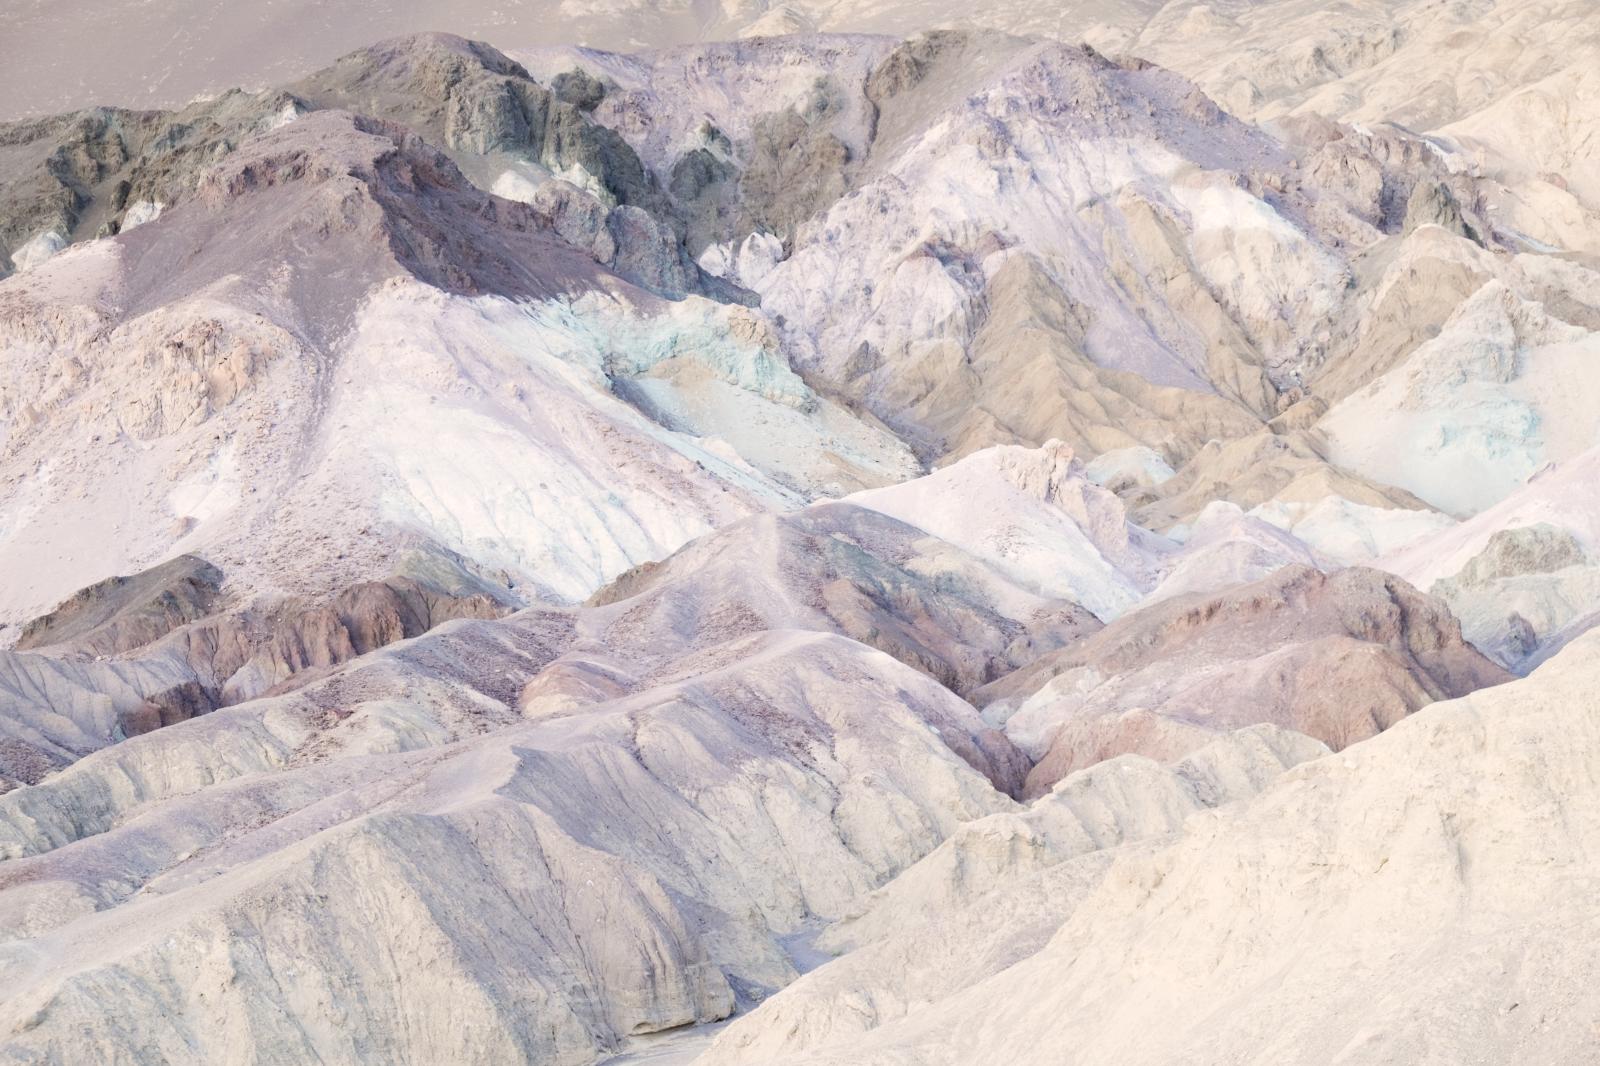 Artist's Way, Death Valley